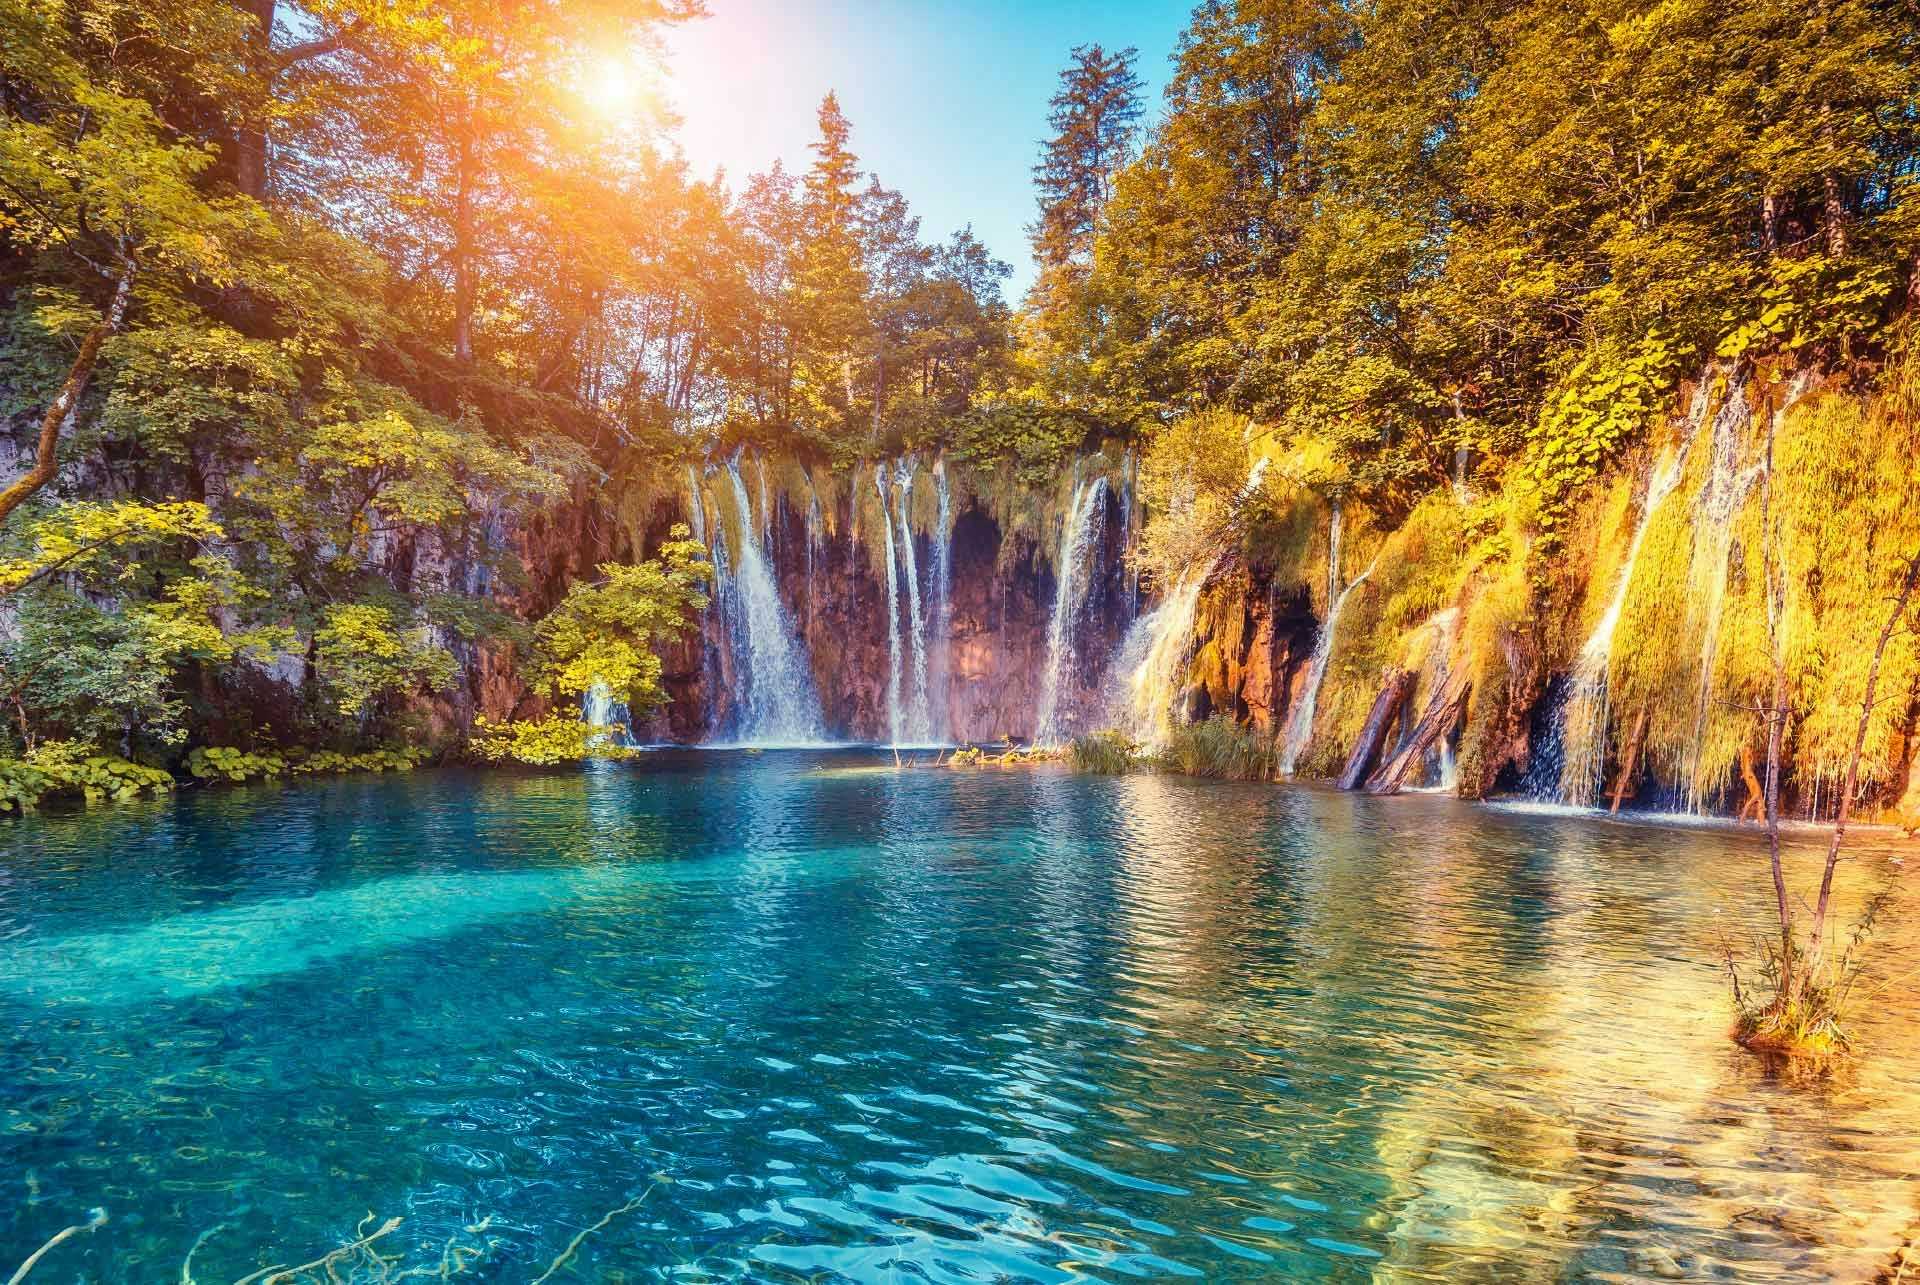 Krka National Park waterfalls in Croatia